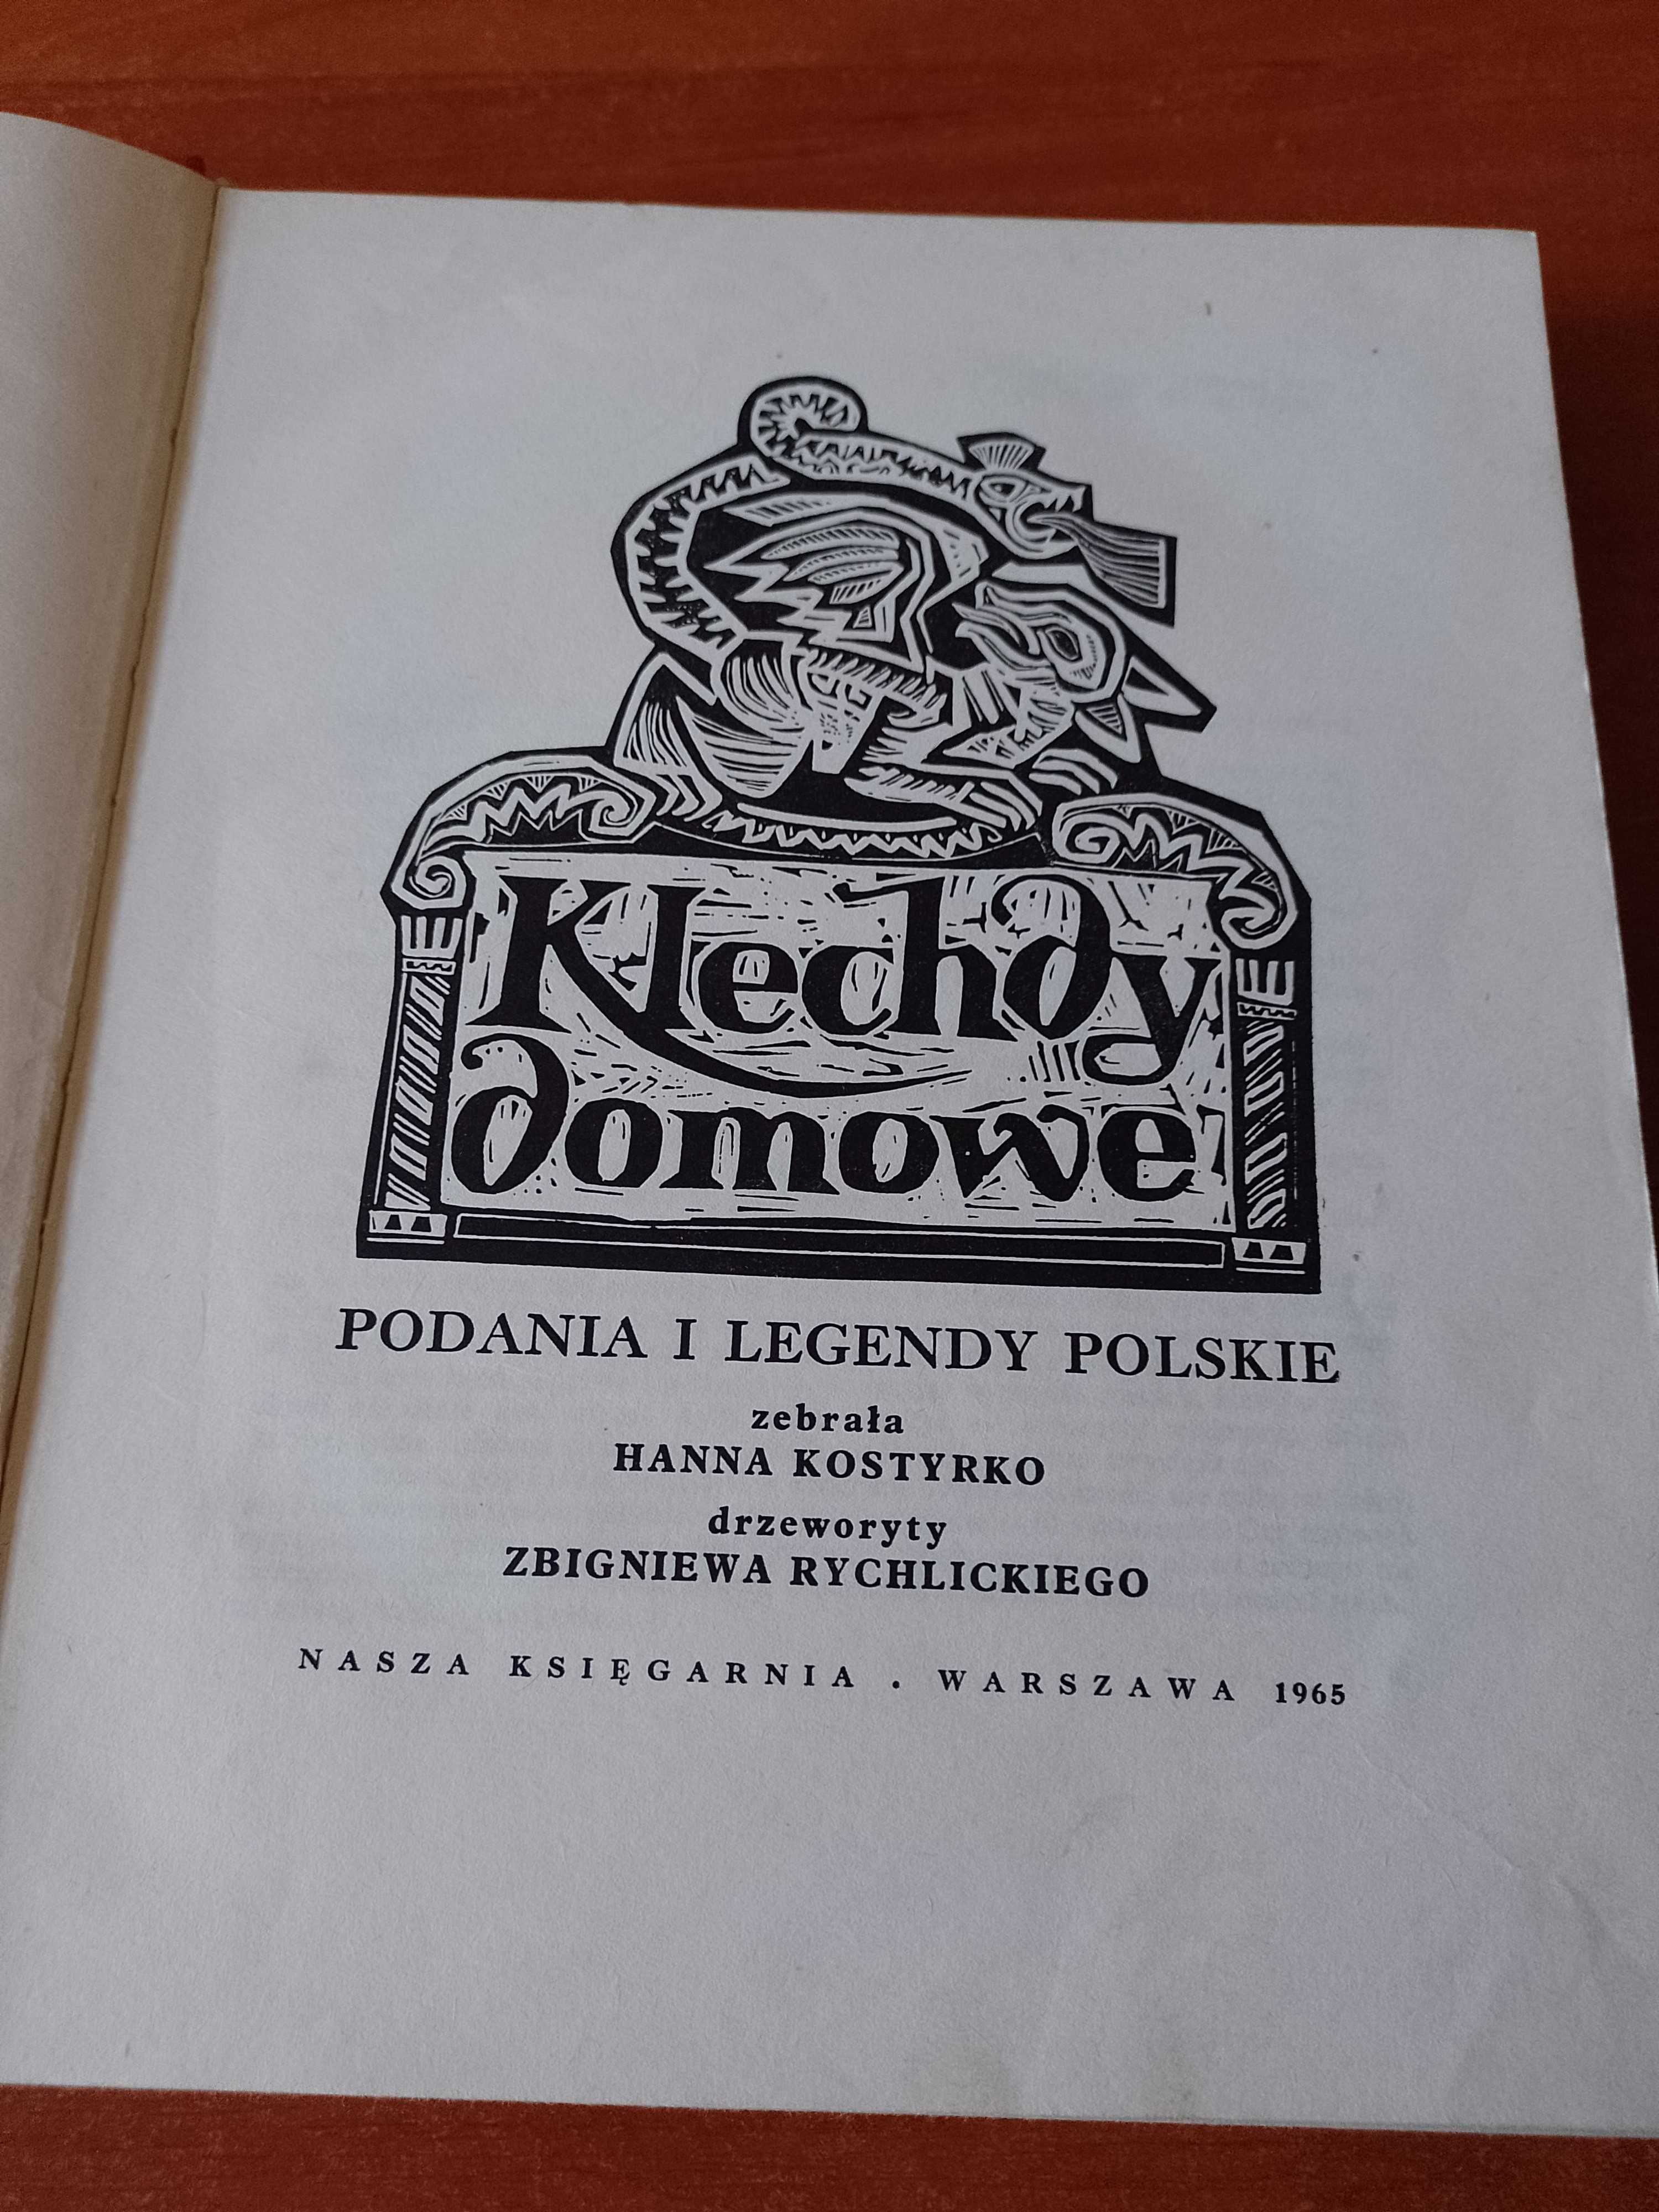 Klechdy Domowe-podania i legendy polskie -1965 rok.